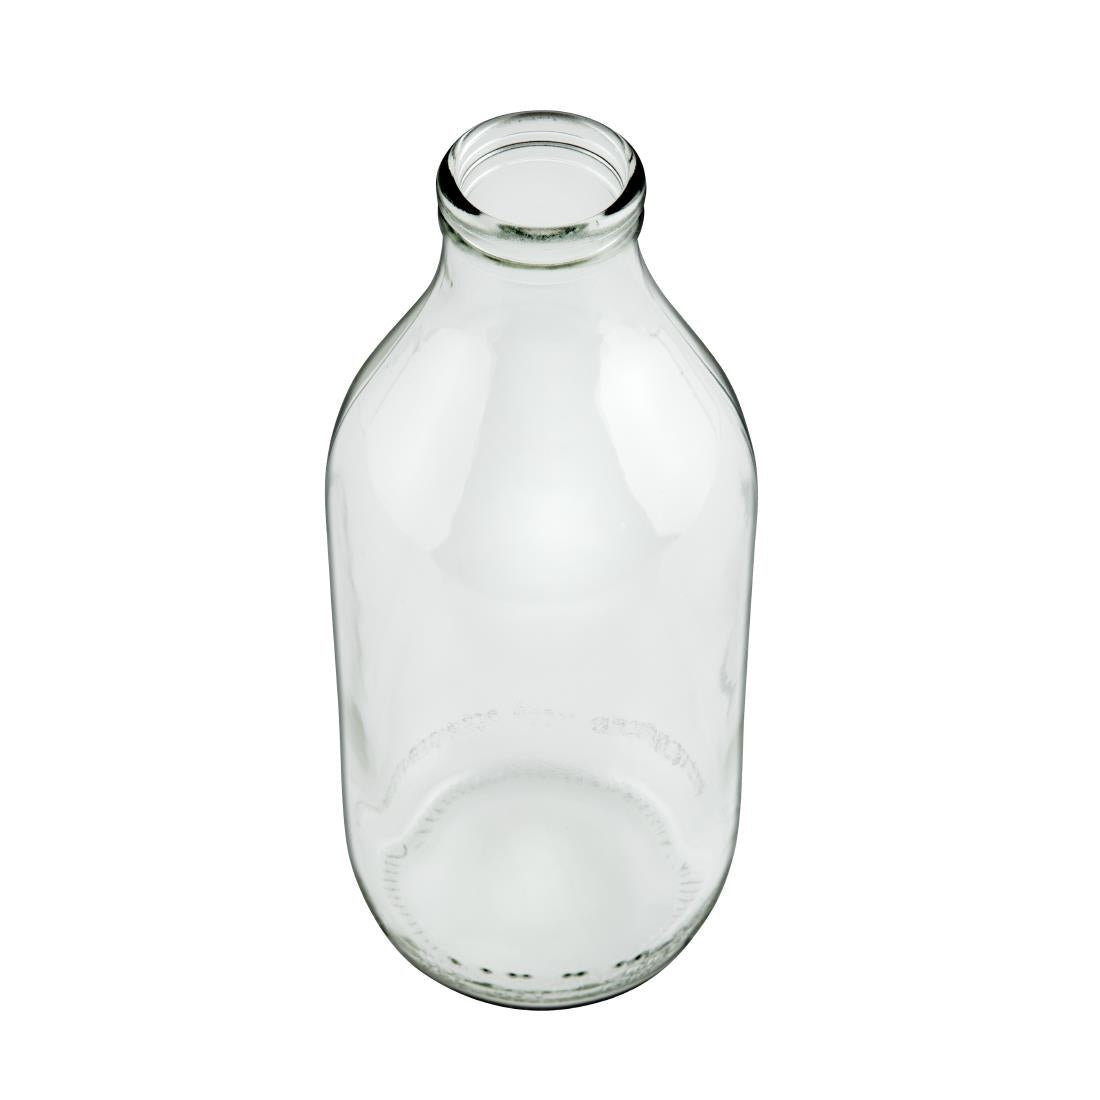 GM124 Utopia Pint Milk Bottle 580ml (Pack of 12)